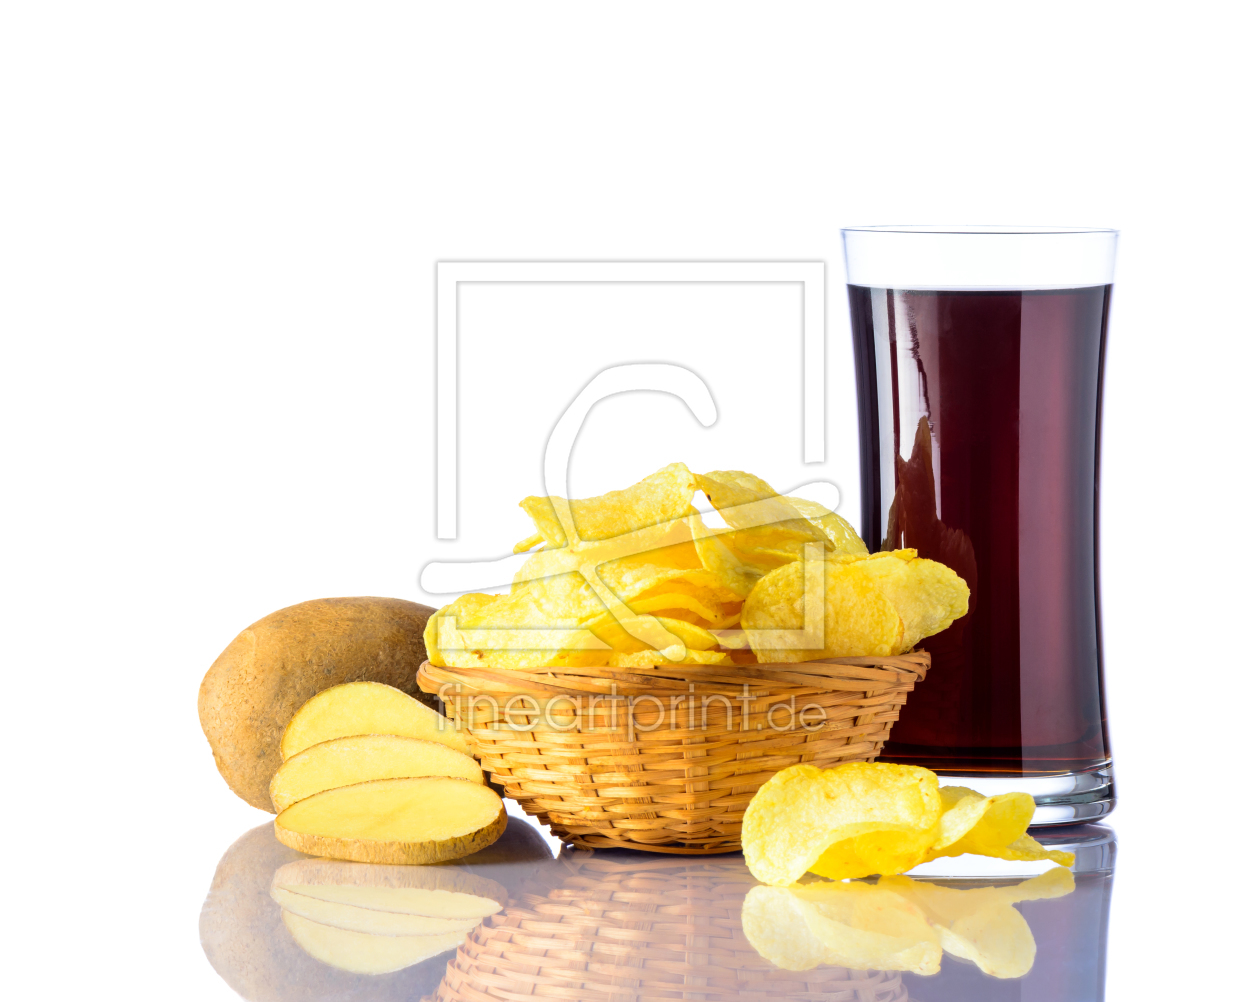 Bild-Nr.: 11921295 Cola mit Kartoffelchips auf Weiß Hintergrund erstellt von xfotostudio